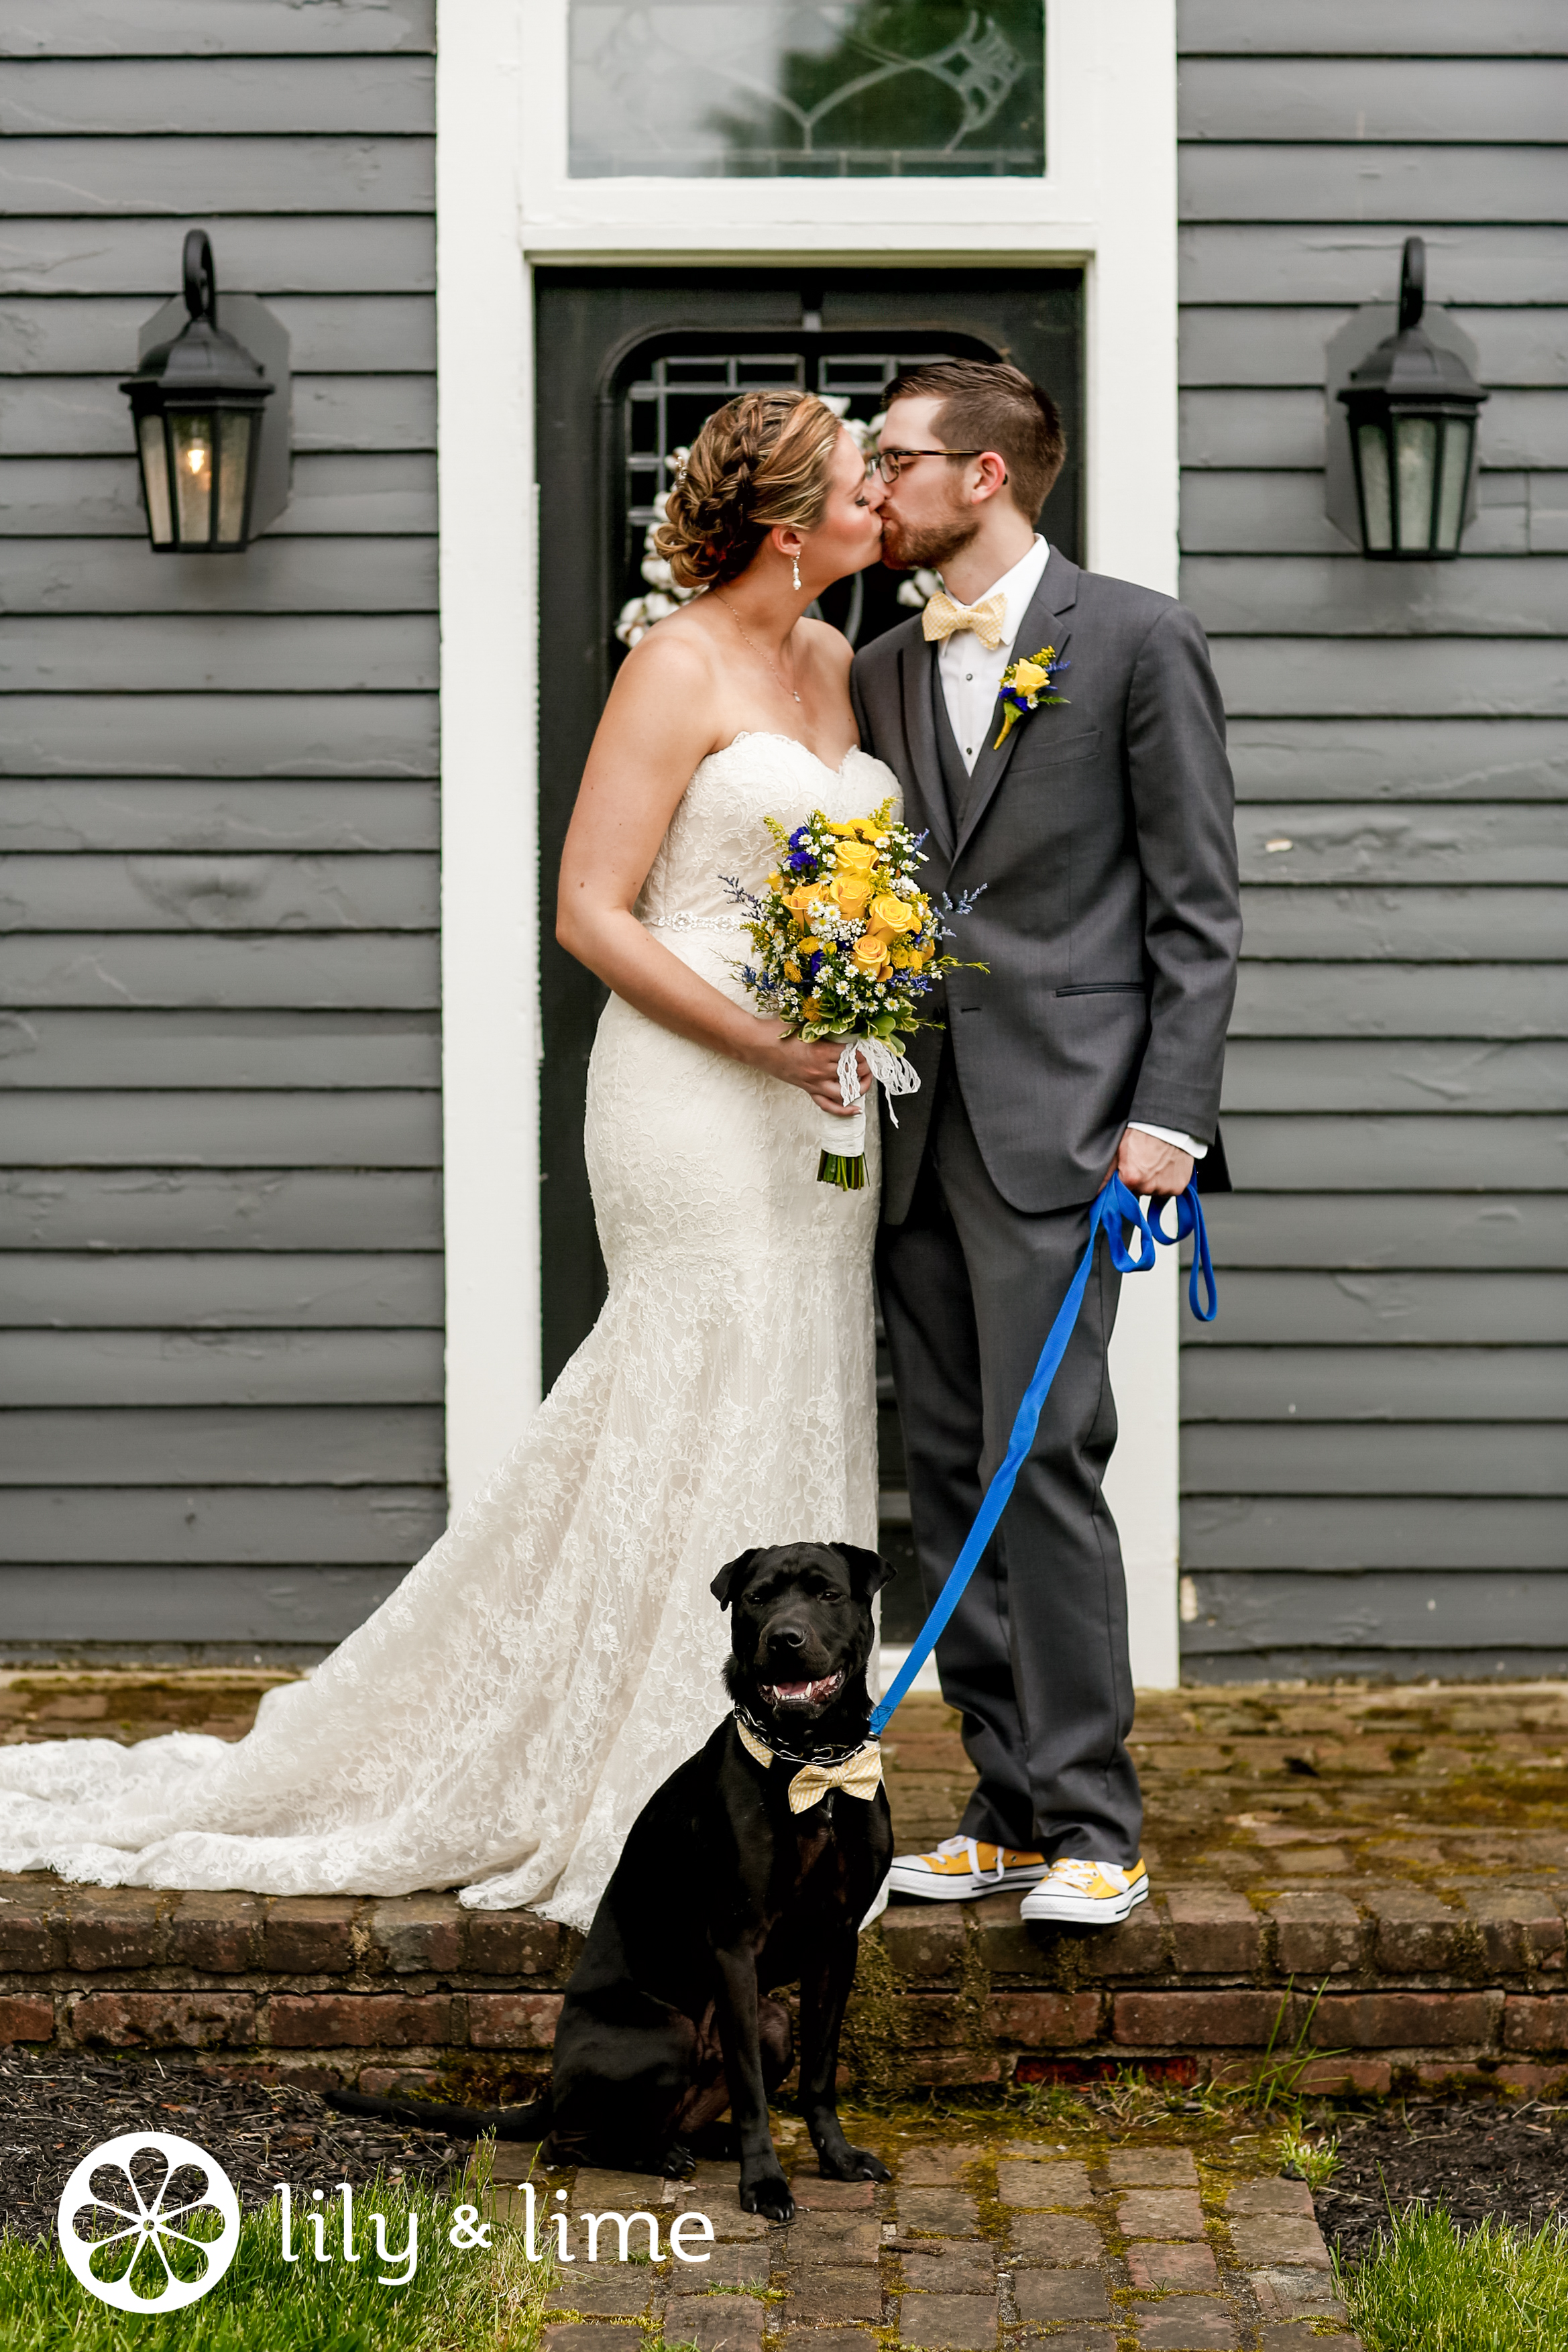 dog in wedding bowtie photos